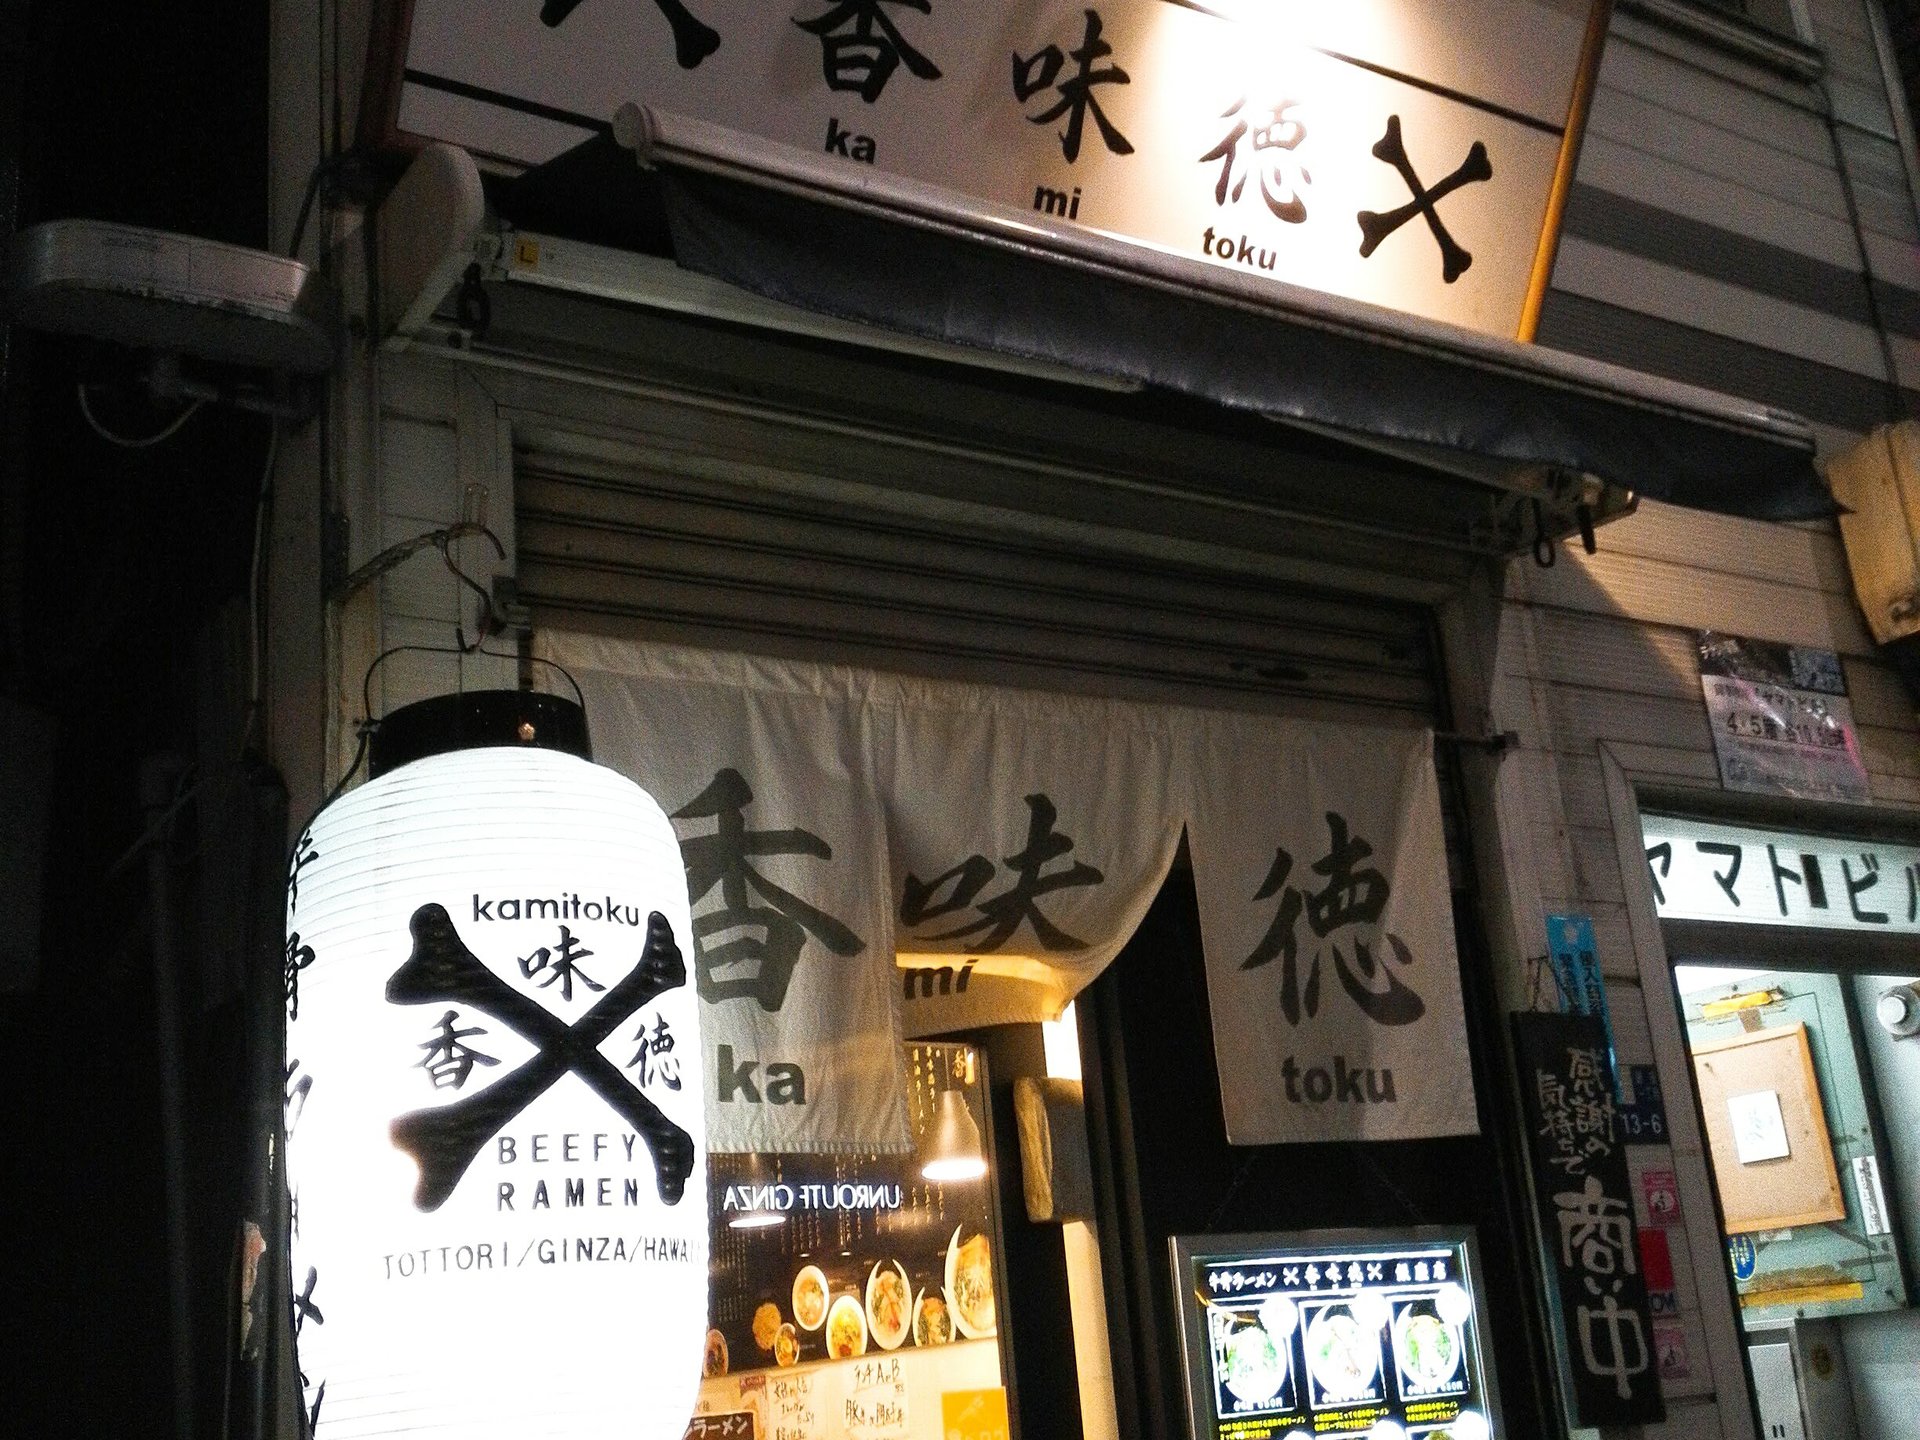 銀座で食べられる鳥取県の牛骨ラーメン「香味徳」のランチセット